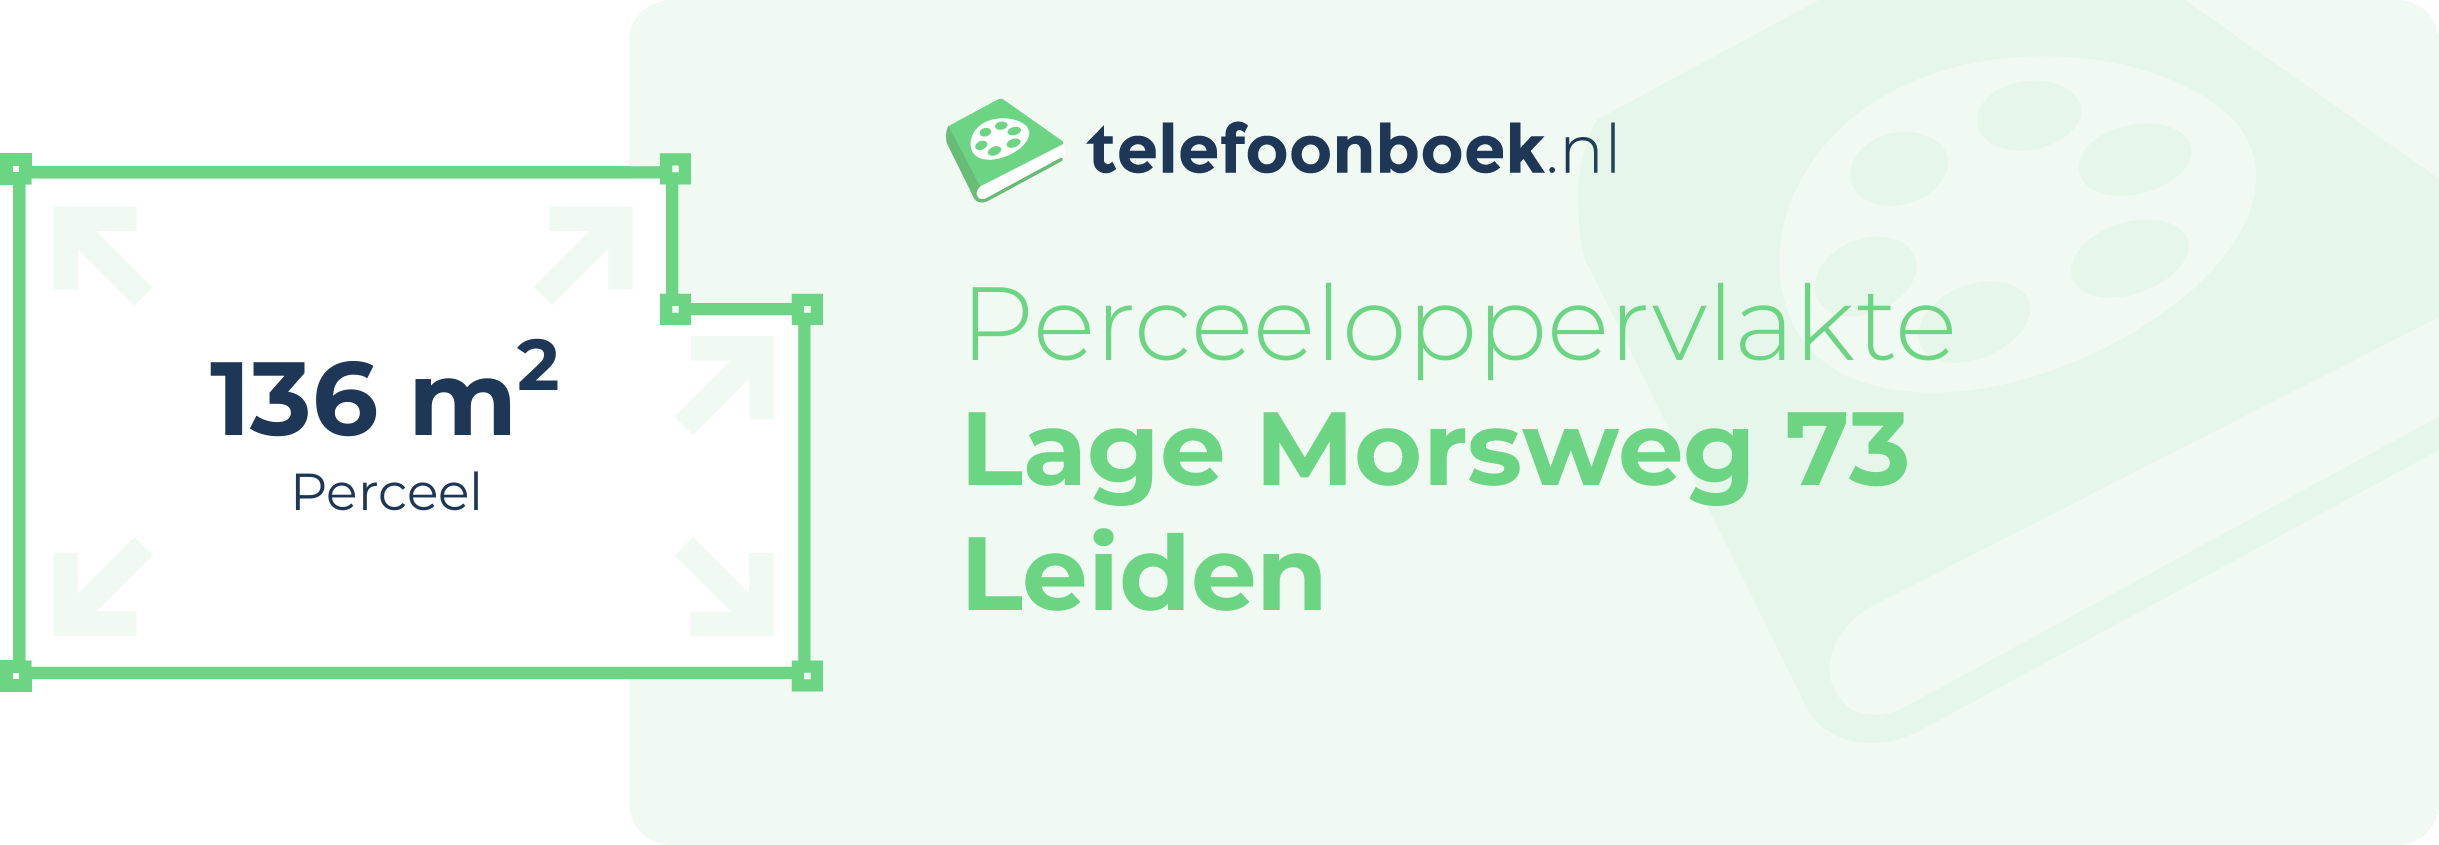 Perceeloppervlakte Lage Morsweg 73 Leiden